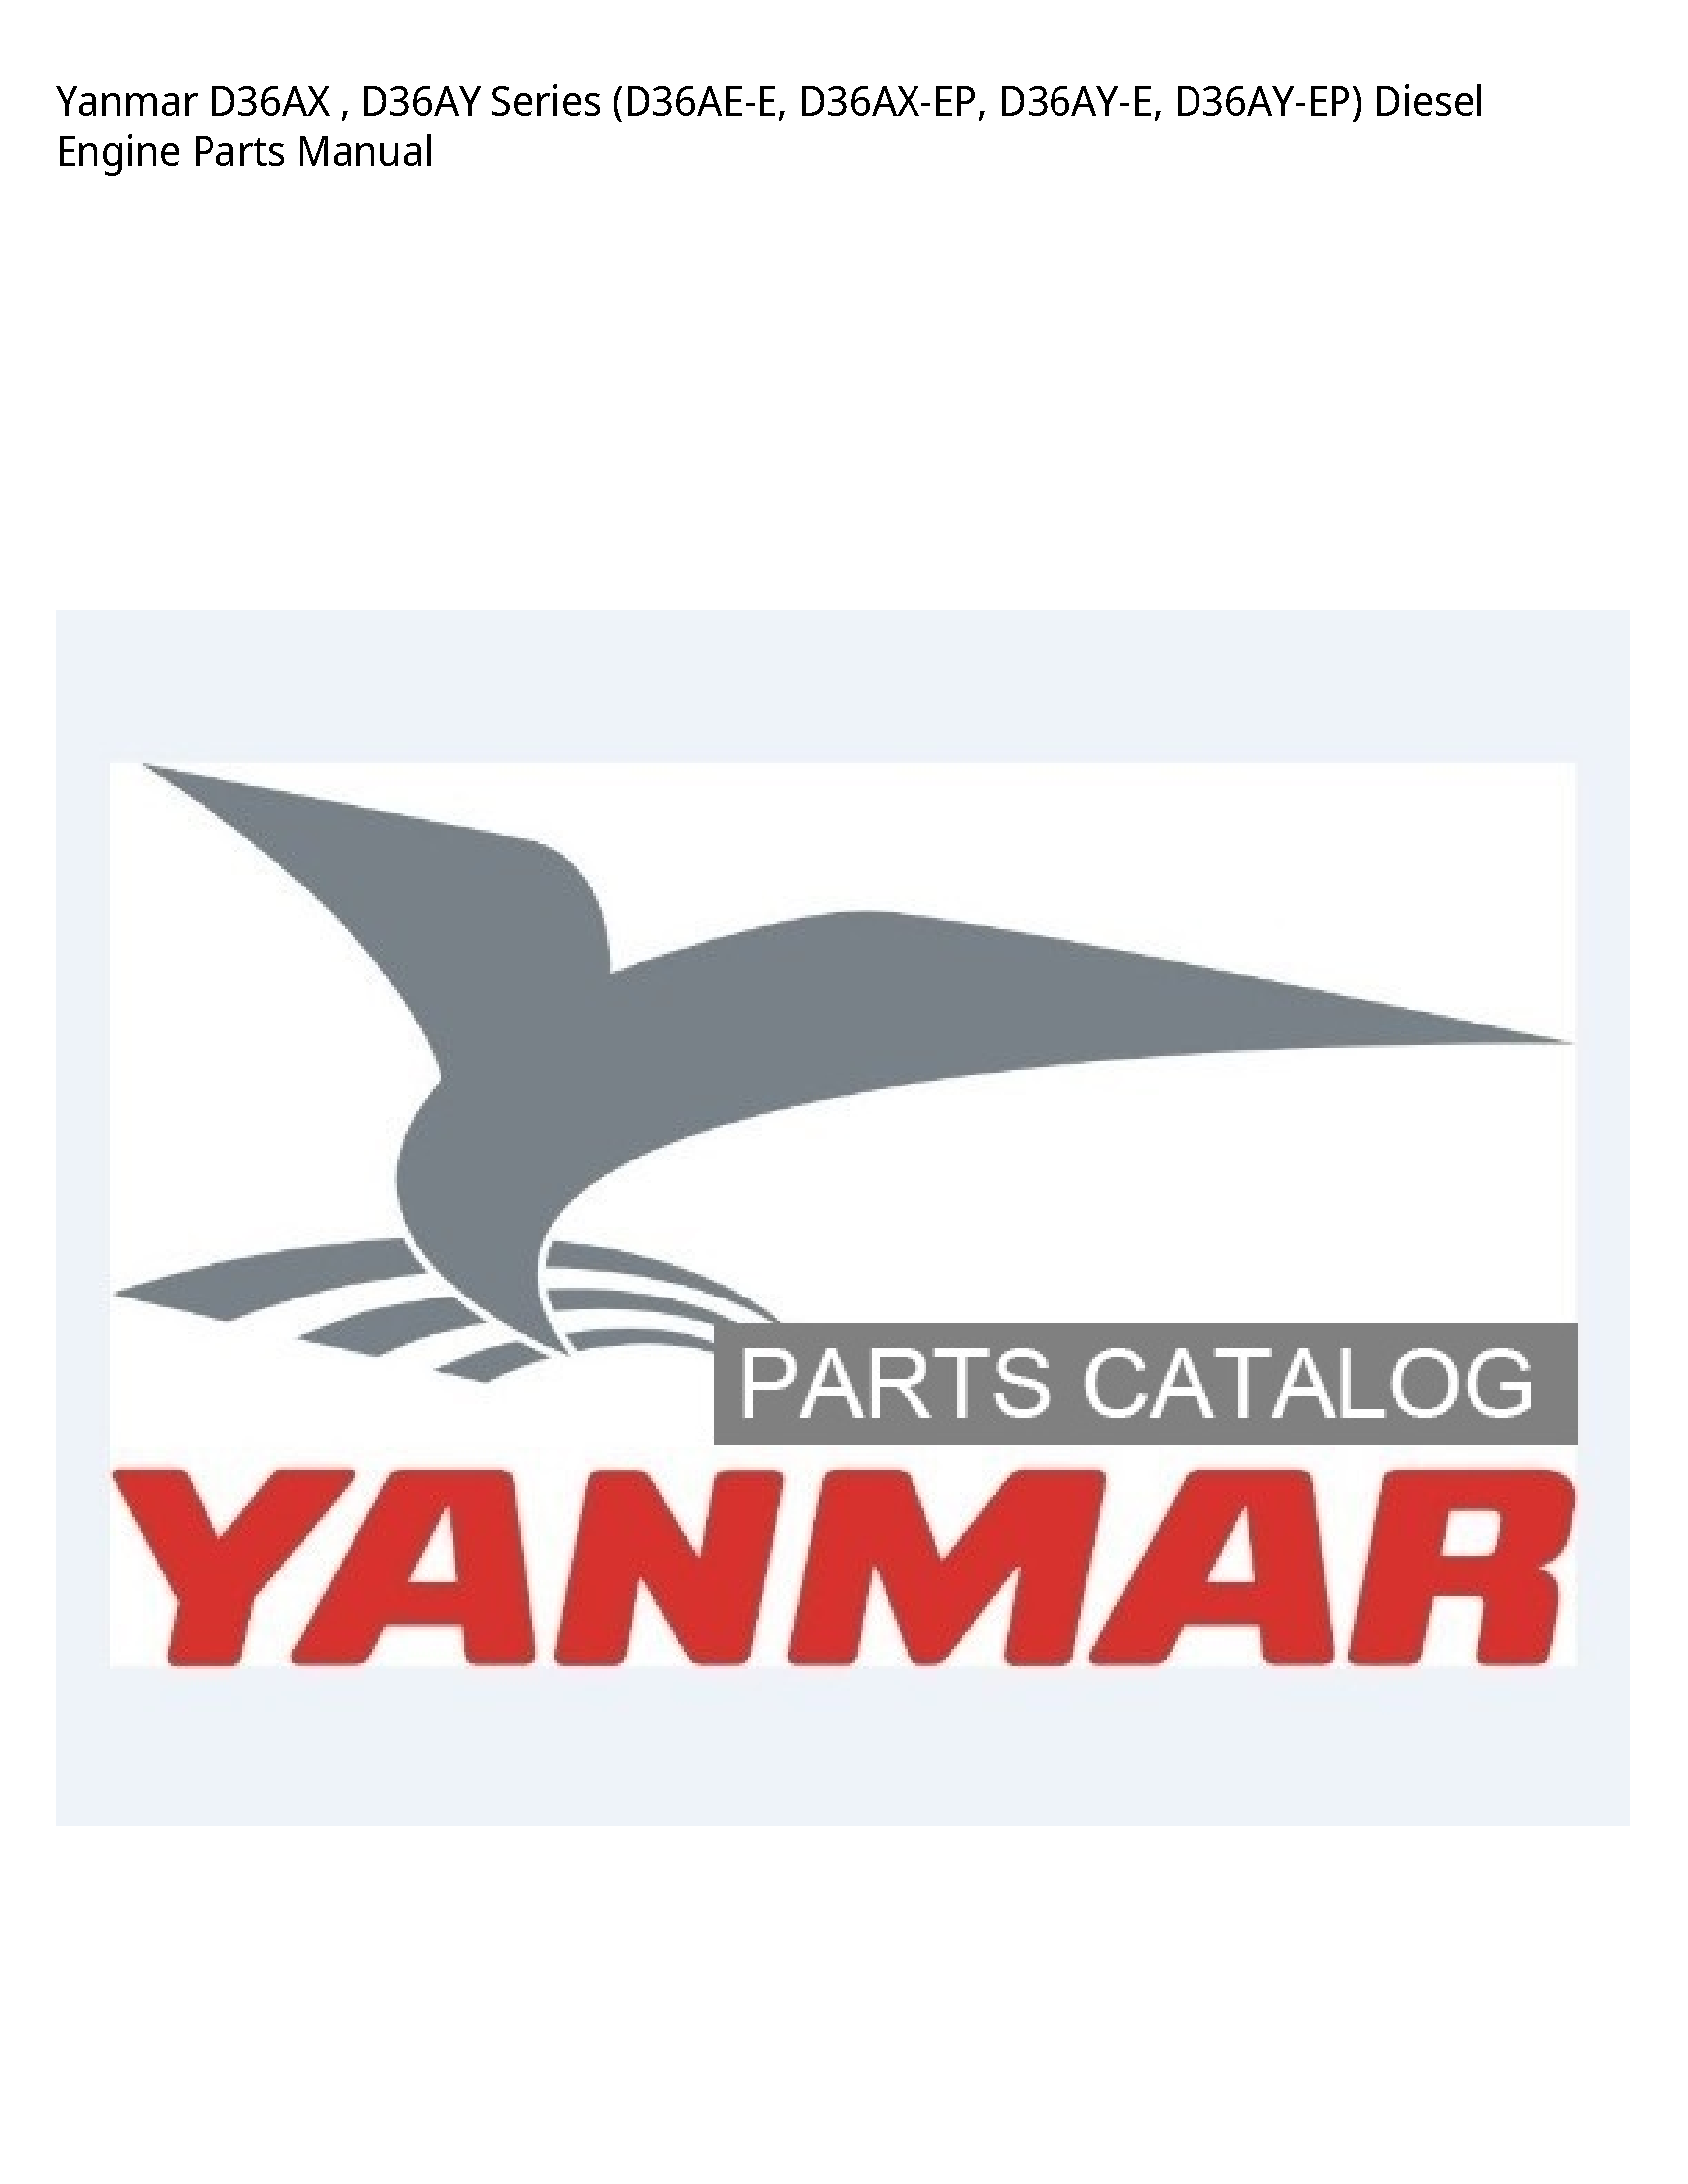 Yanmar D36AX Series Diesel Engine Parts manual